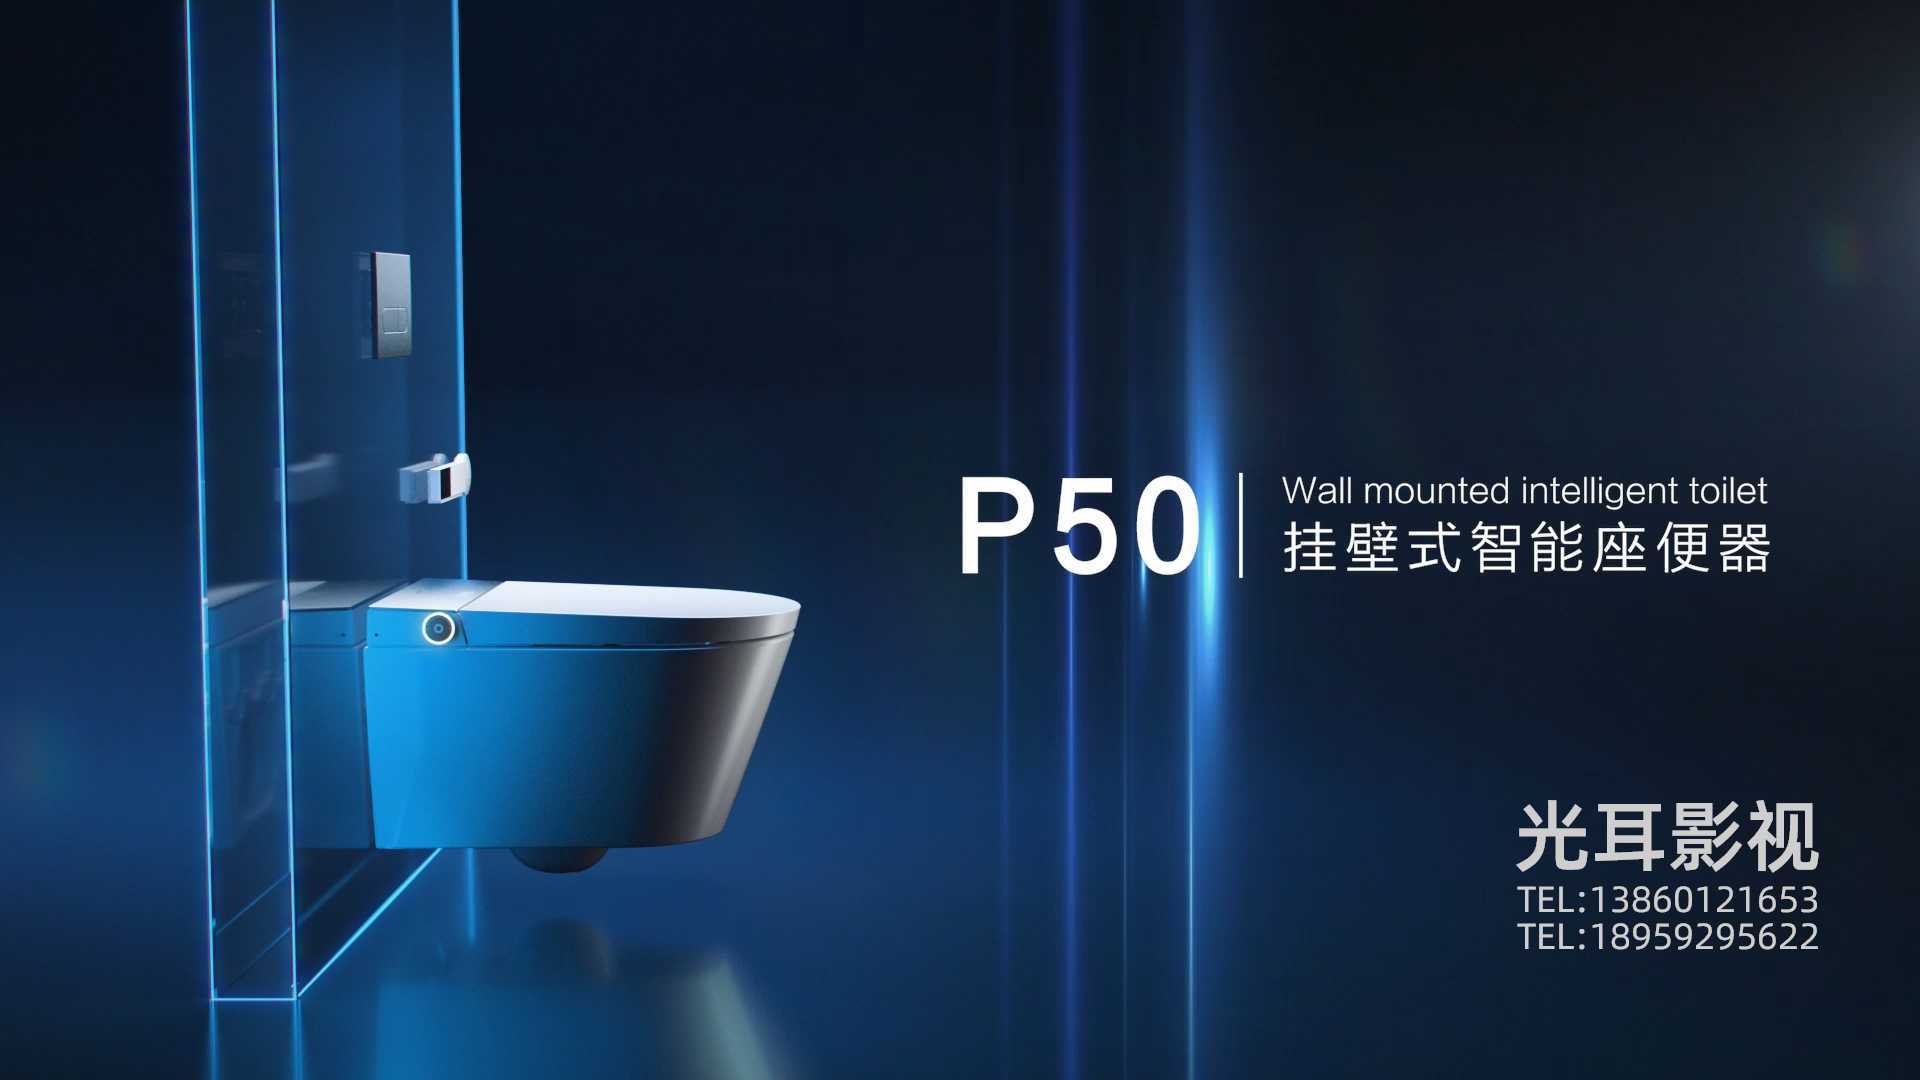 九牧卫浴—P50挂壁式智能马桶